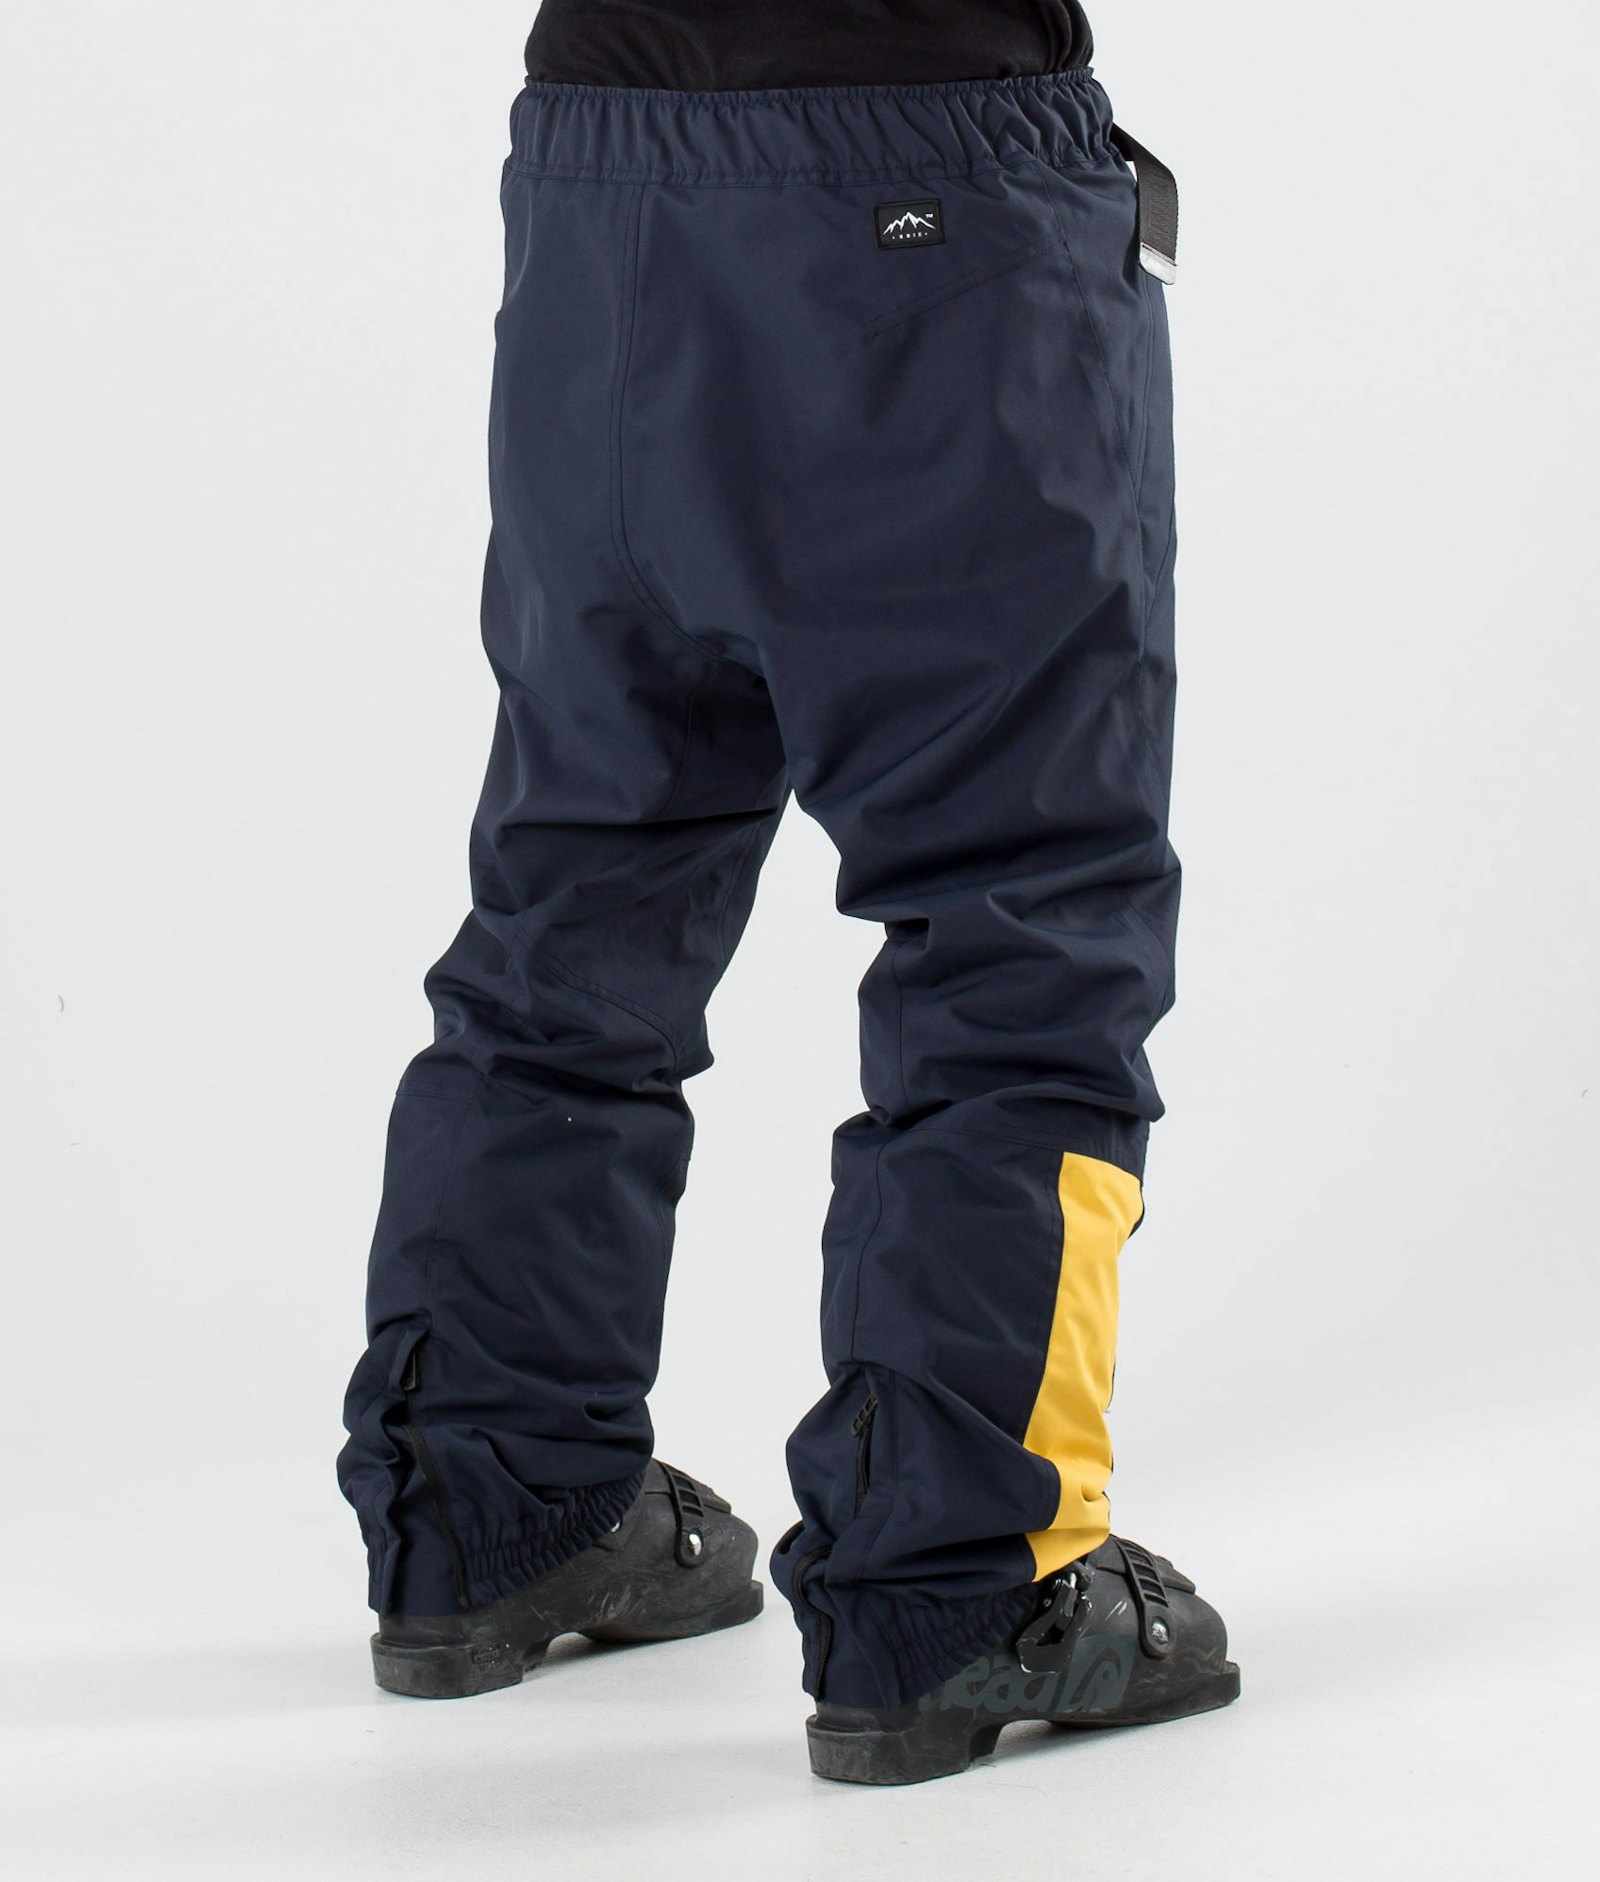 Dope JT Blizzard 2019 Lyžařské Kalhoty Pánské Yellow/Marine